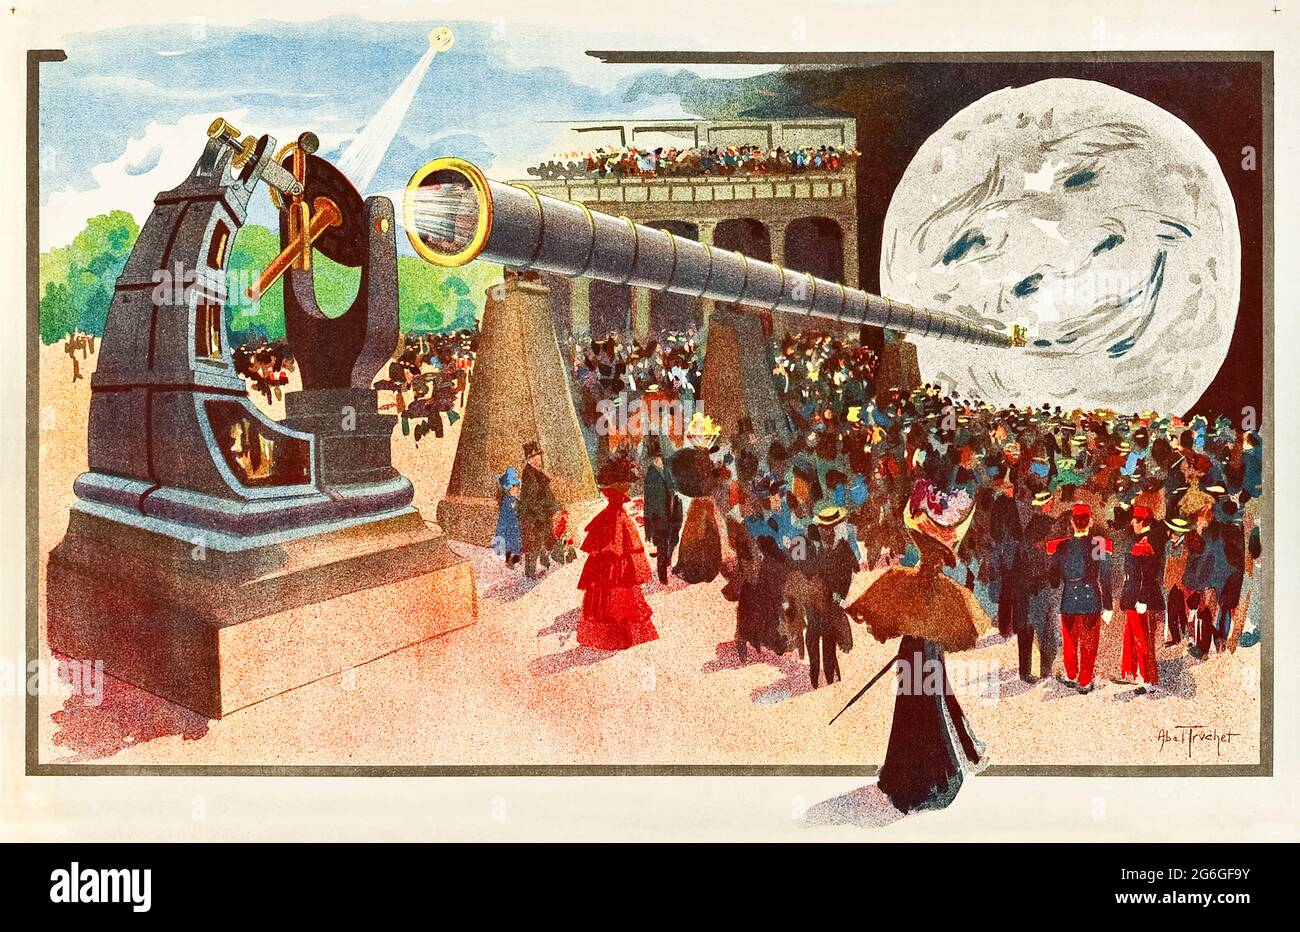 «La Lune à un mètre!» (¡La Luna a un metro!) Cartel de 1900 que muestra el “Grande Lunette” (el telescopio refractivo más grande del mundo) instalado en el Palacio de la Óptica en la Exposición Universal de París de 1900 con la imagen de la luna con una cara proyectada en una pantalla inspirada en la película de Georges Méliès de 1898 del mismo nombre. Obra de Louis Abel-Truchet (1857-1918). Crédito: Colección Privada / AF Fotografie Foto de stock